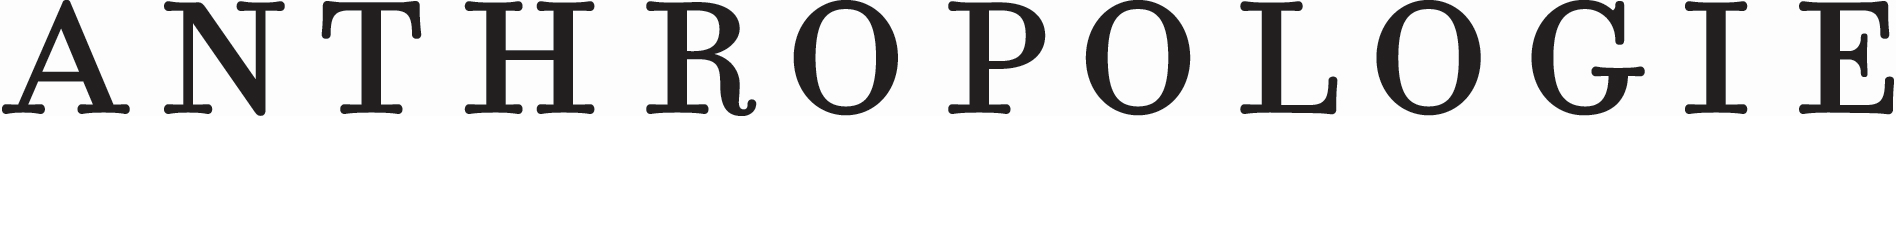 Antropologie Logo - View Employer